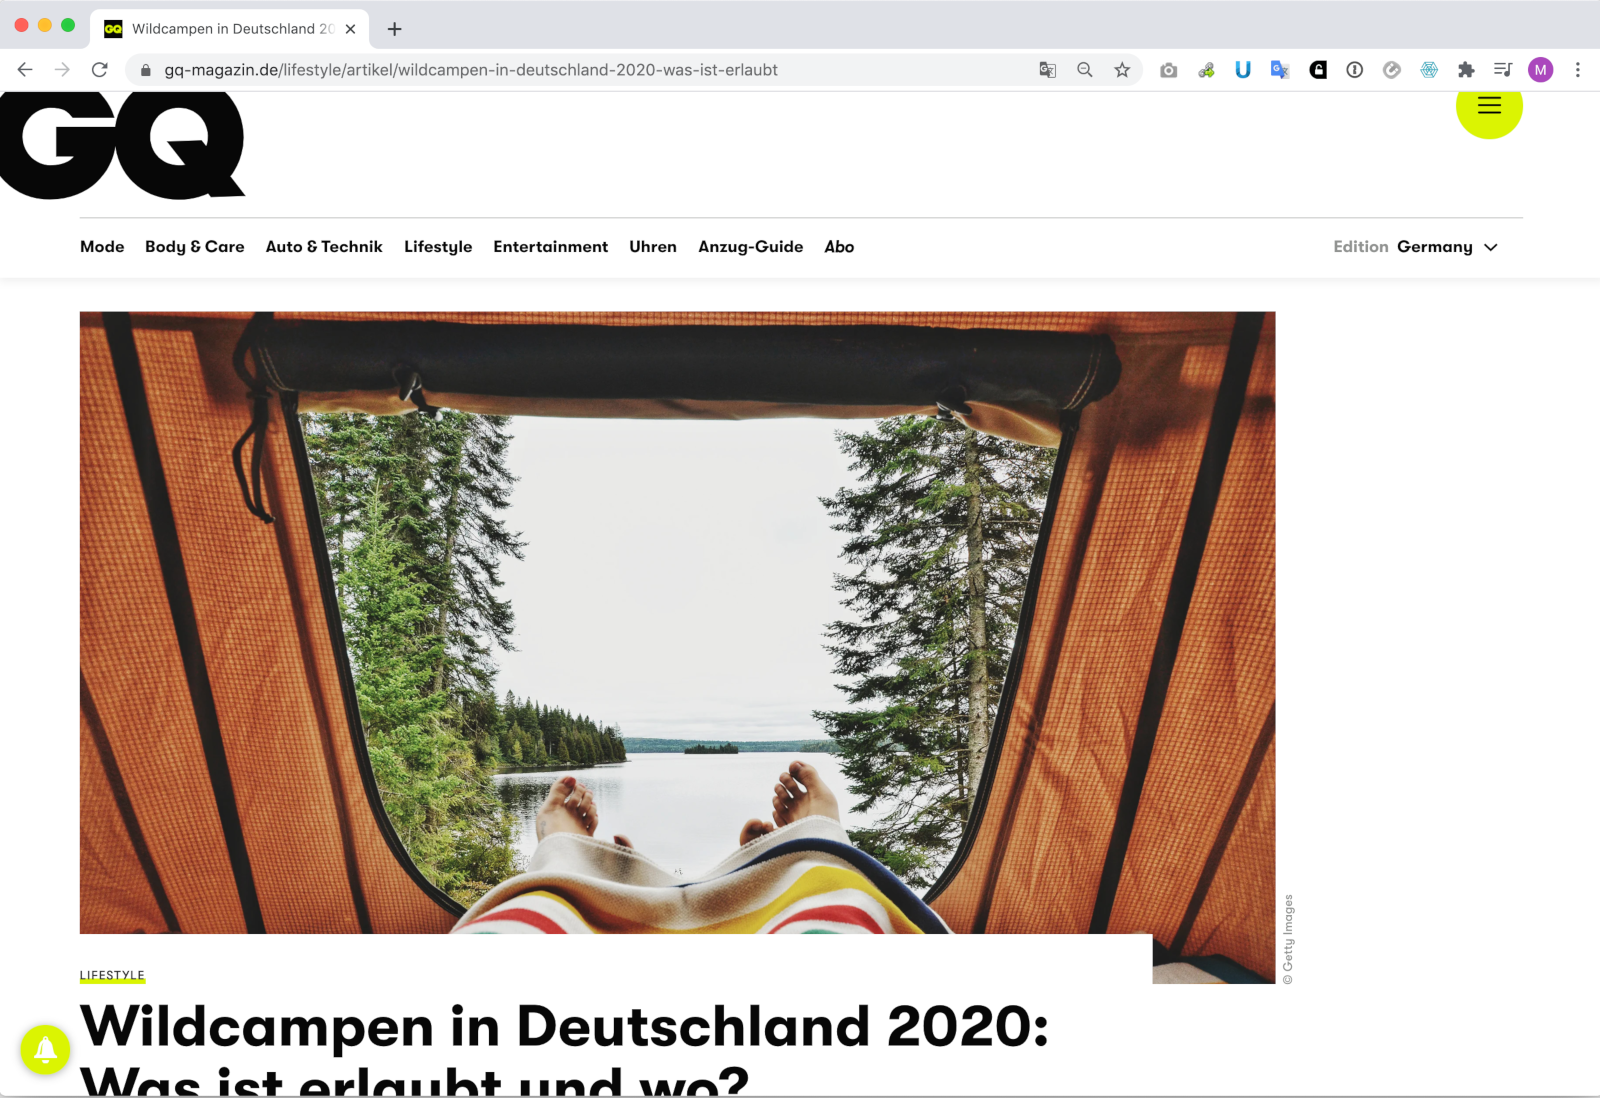 14 Juli, 2020 — GQ over wildkamperen in Duitsland